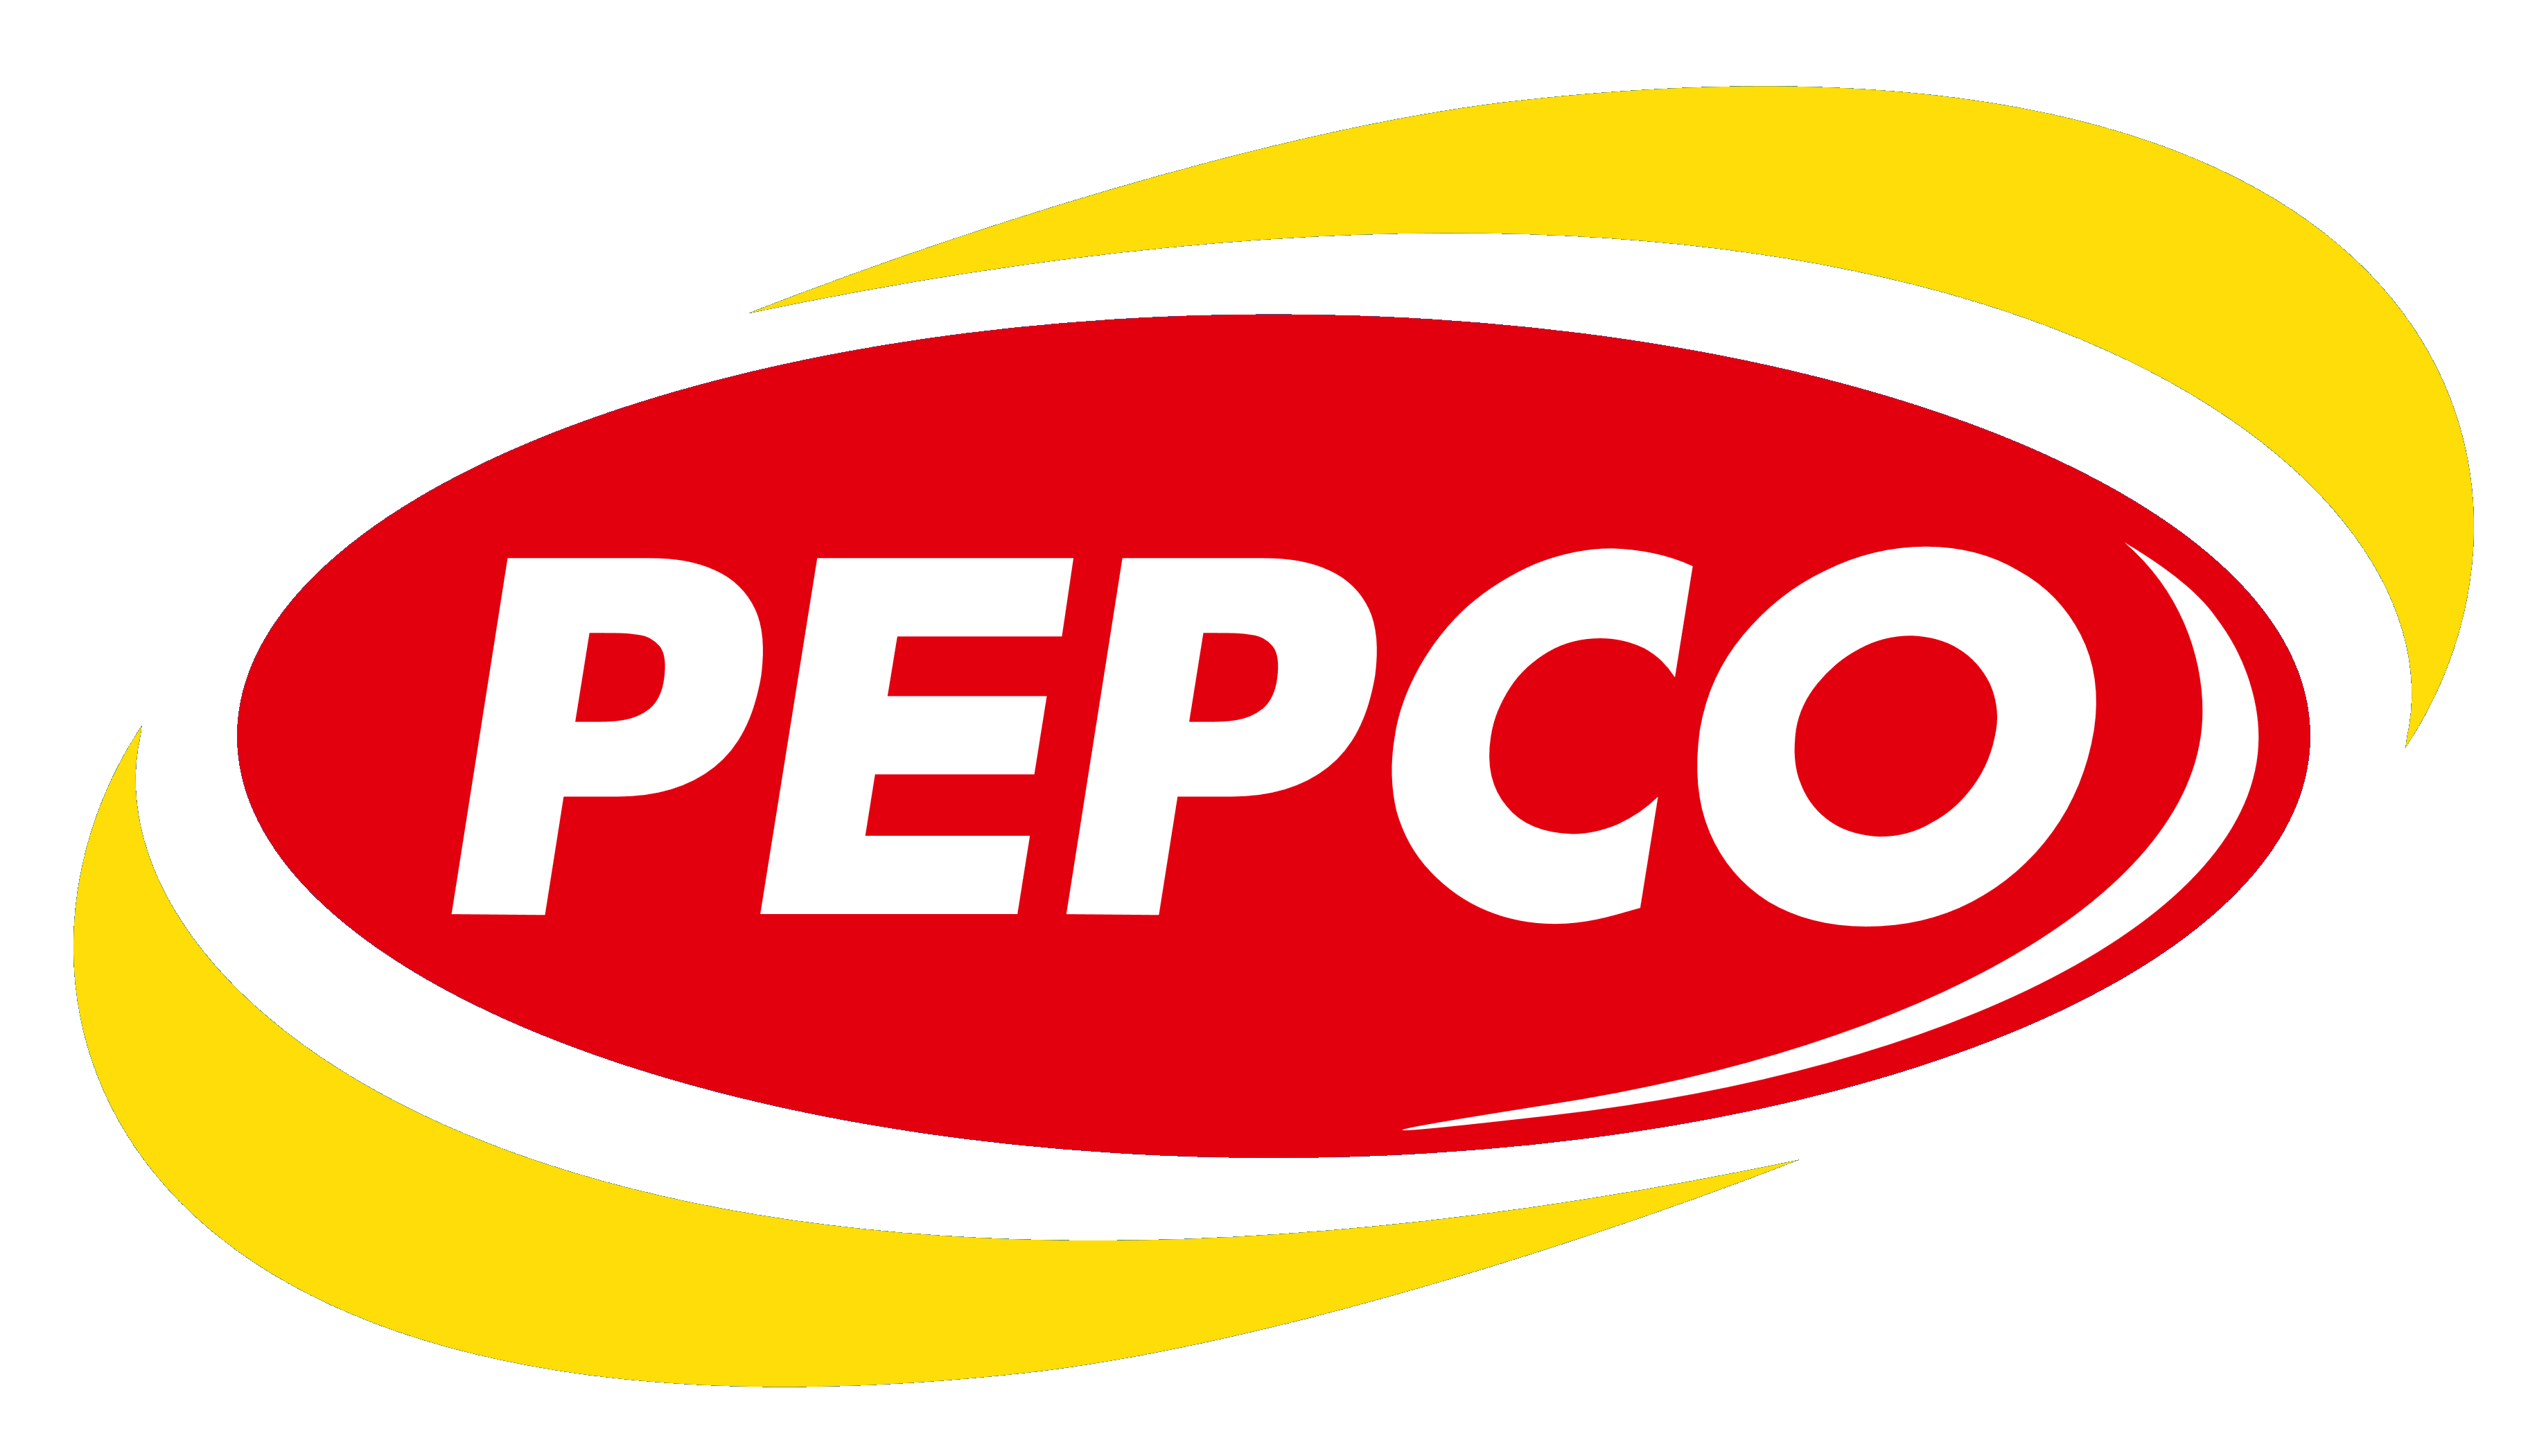 Pepco Logo - Pepco